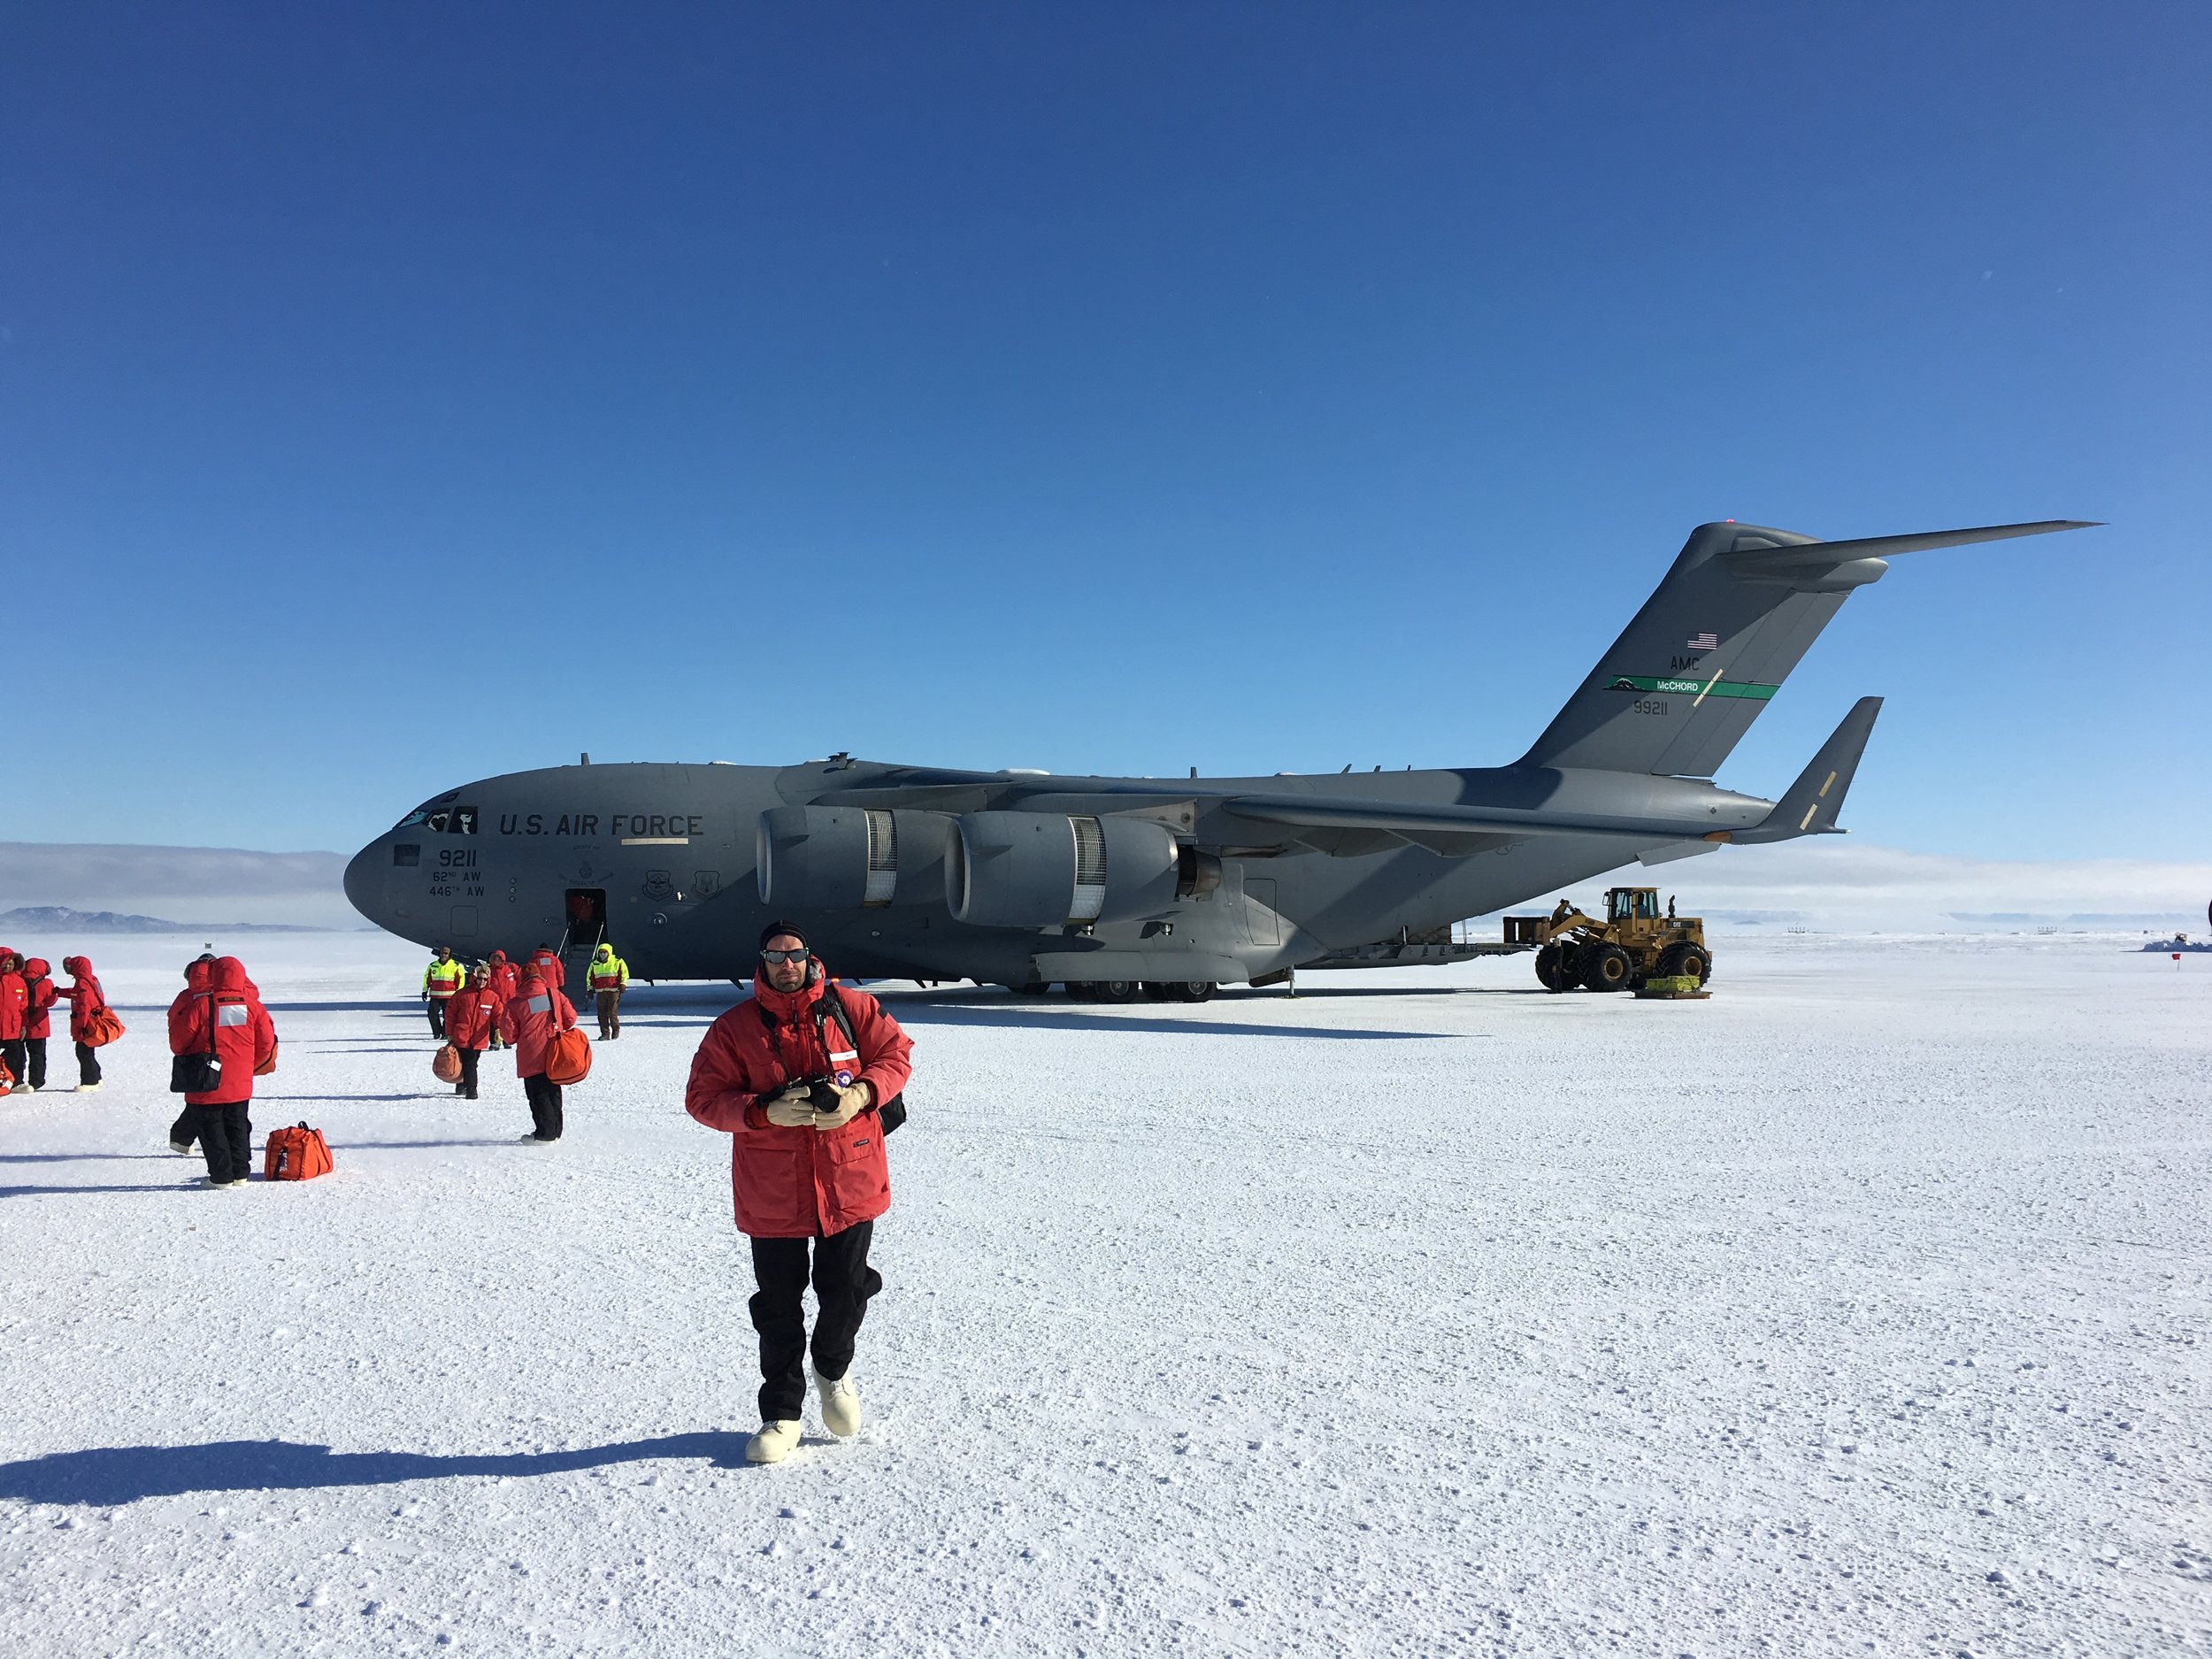 Arriving in Antarctica